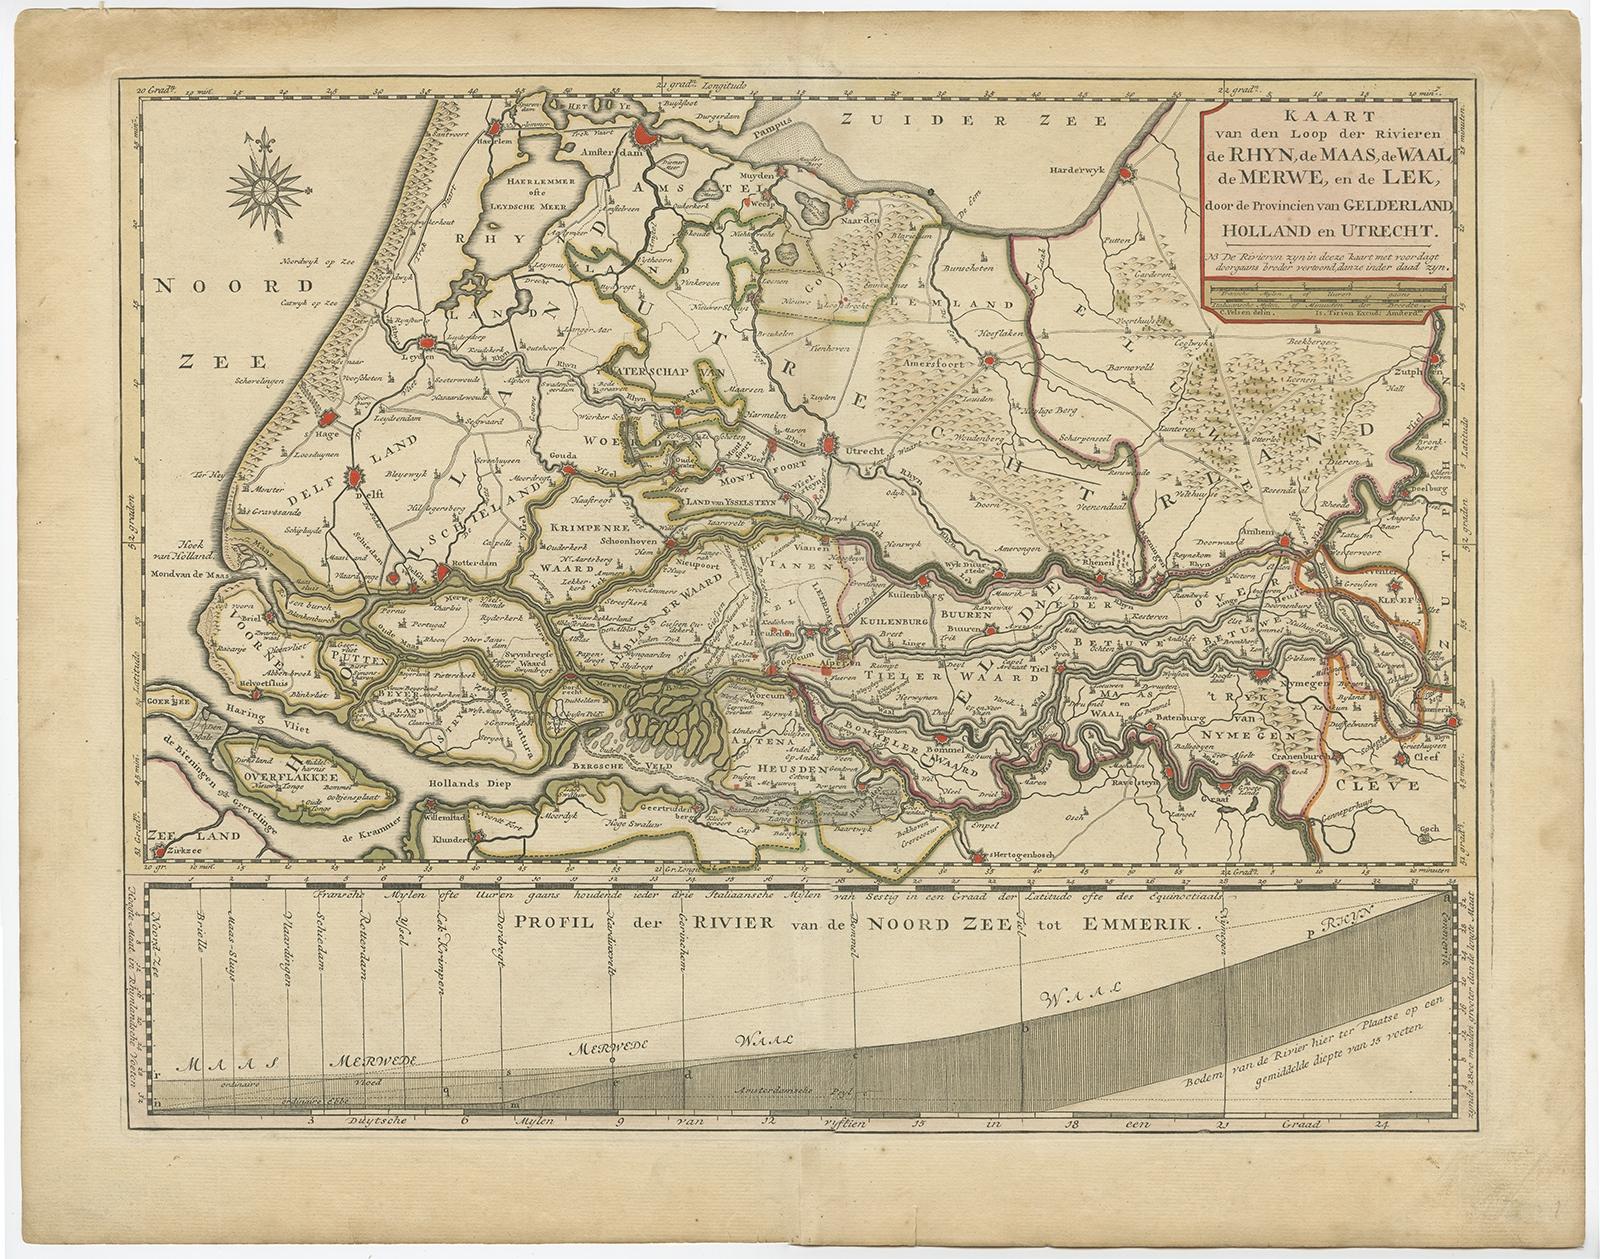 Antique map titled 'Kaart van den Loop der Rivieren de Rhyn, de Maas, de Waal, de Merwe en de Lek, door de Provincien van Gelderland, Holland en Utrecht'. 

Detailed map of the center of the Netherlands, with the Rhine, Maas, de Merwe en Lek